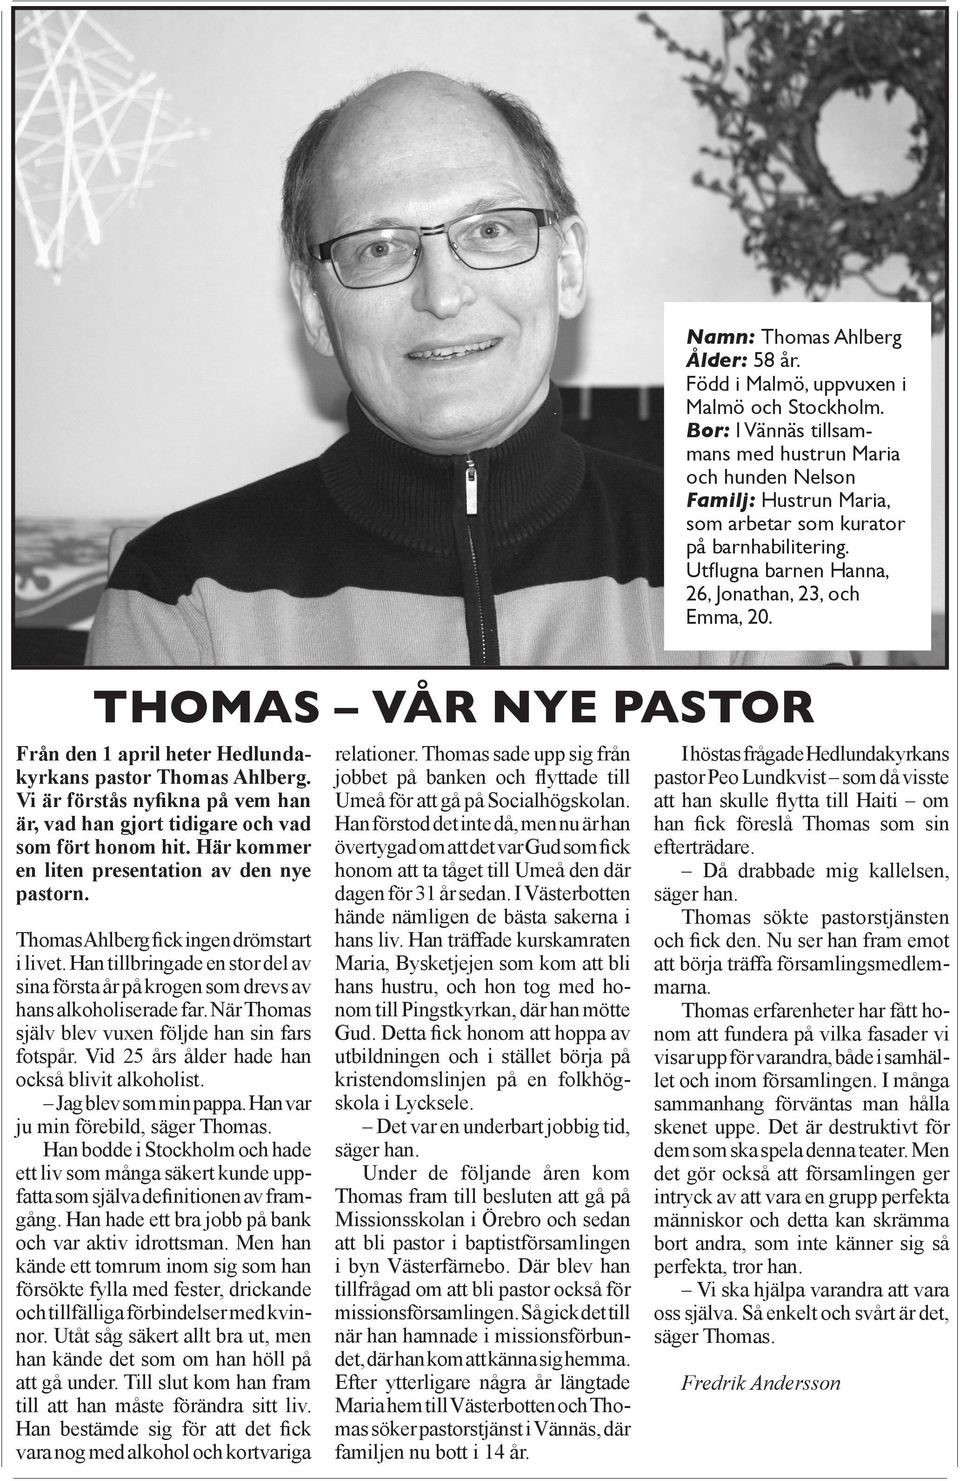 Thomas vår nye pastor Från den 1 april heter Hedlundakyrkans pastor Thomas Ahlberg. Vi är förstås nyfikna på vem han är, vad han gjort tidigare och vad som fört honom hit.